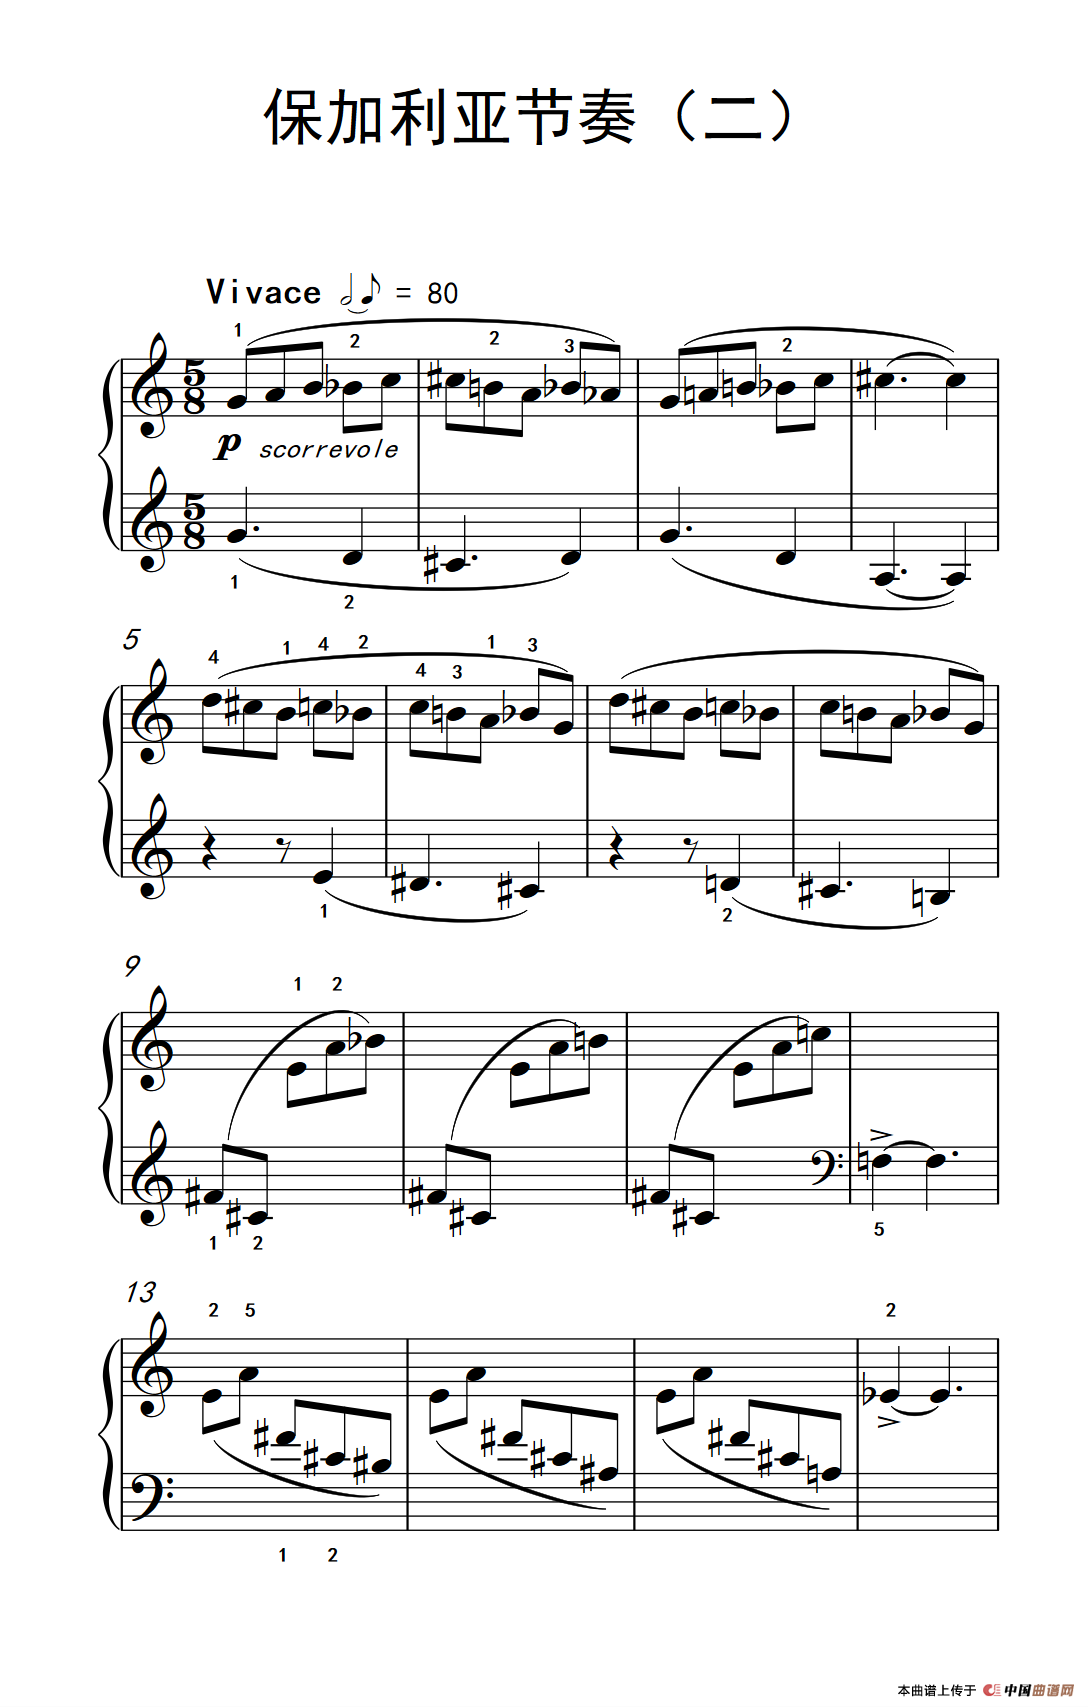 《保加利亚节奏》钢琴曲谱图分享